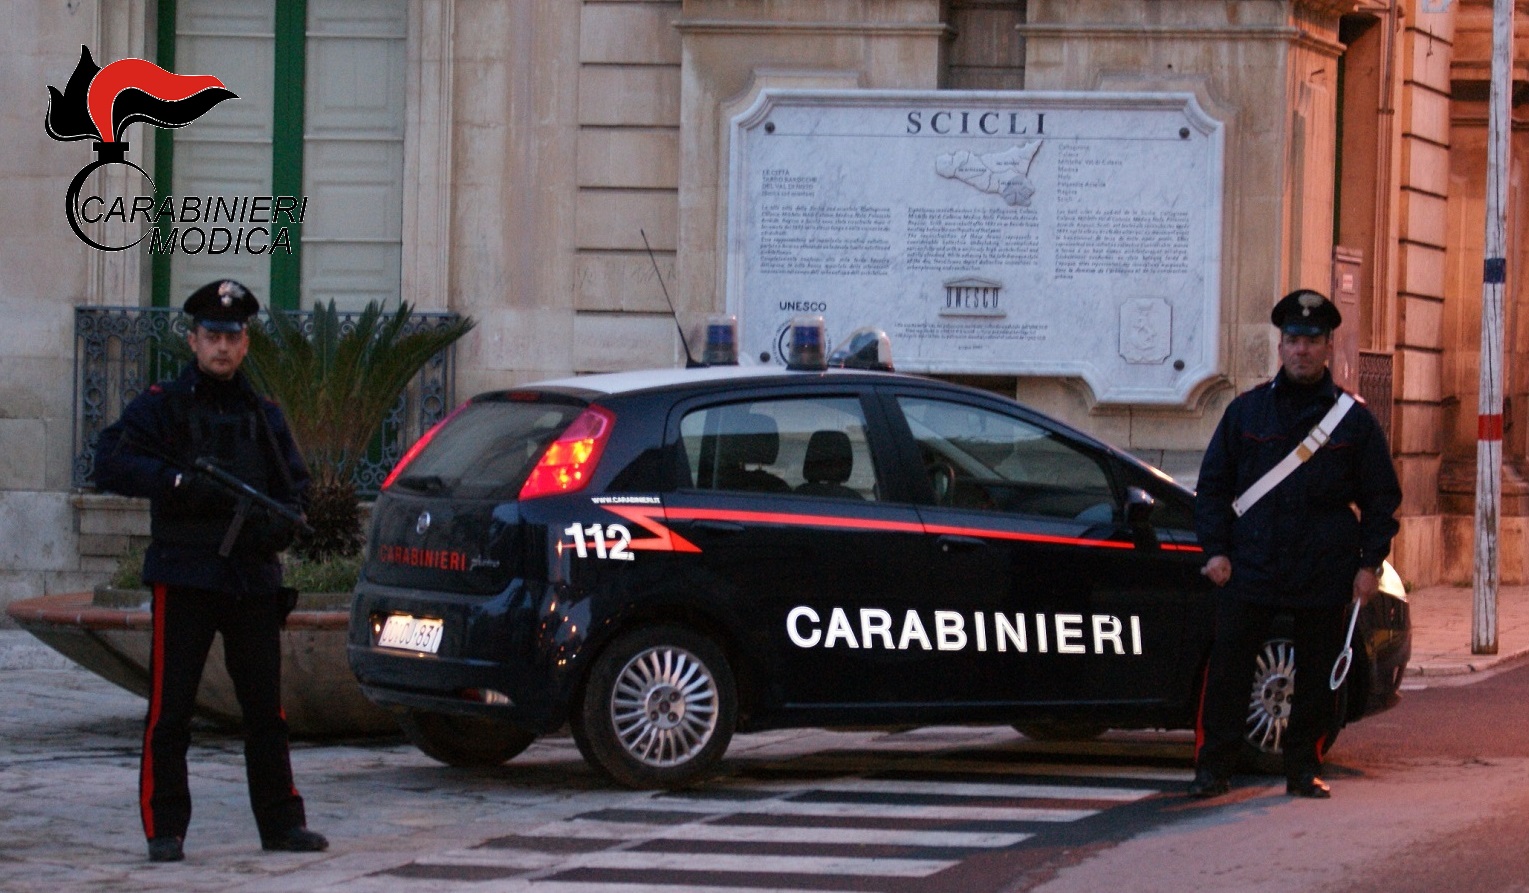  Scicli – Estorsione ad un esercizio commerciale, due persone arrestate in flagranza dai Carabinieri